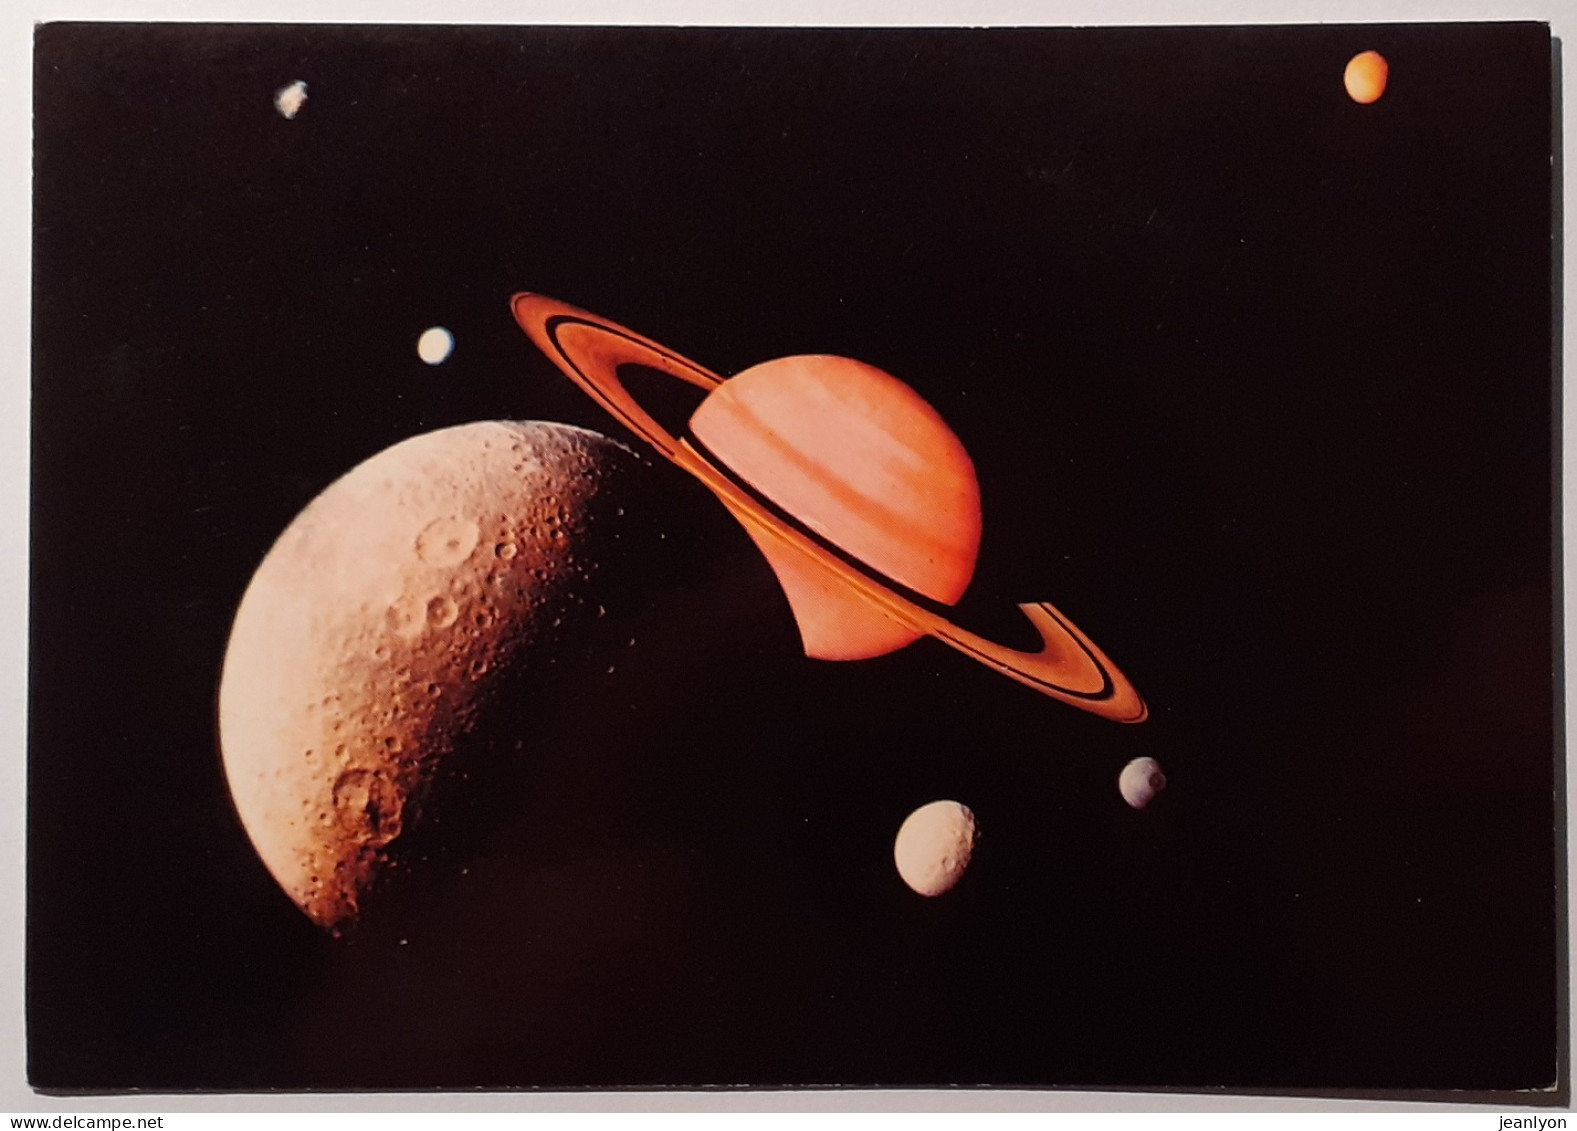 ESPACE - VOYAGEUR 1 - Planète SATURNE / Système Saturnien Avec 6 Satellites : Rhea , Encelade ...- Carte Postale Moderne - Astronomie